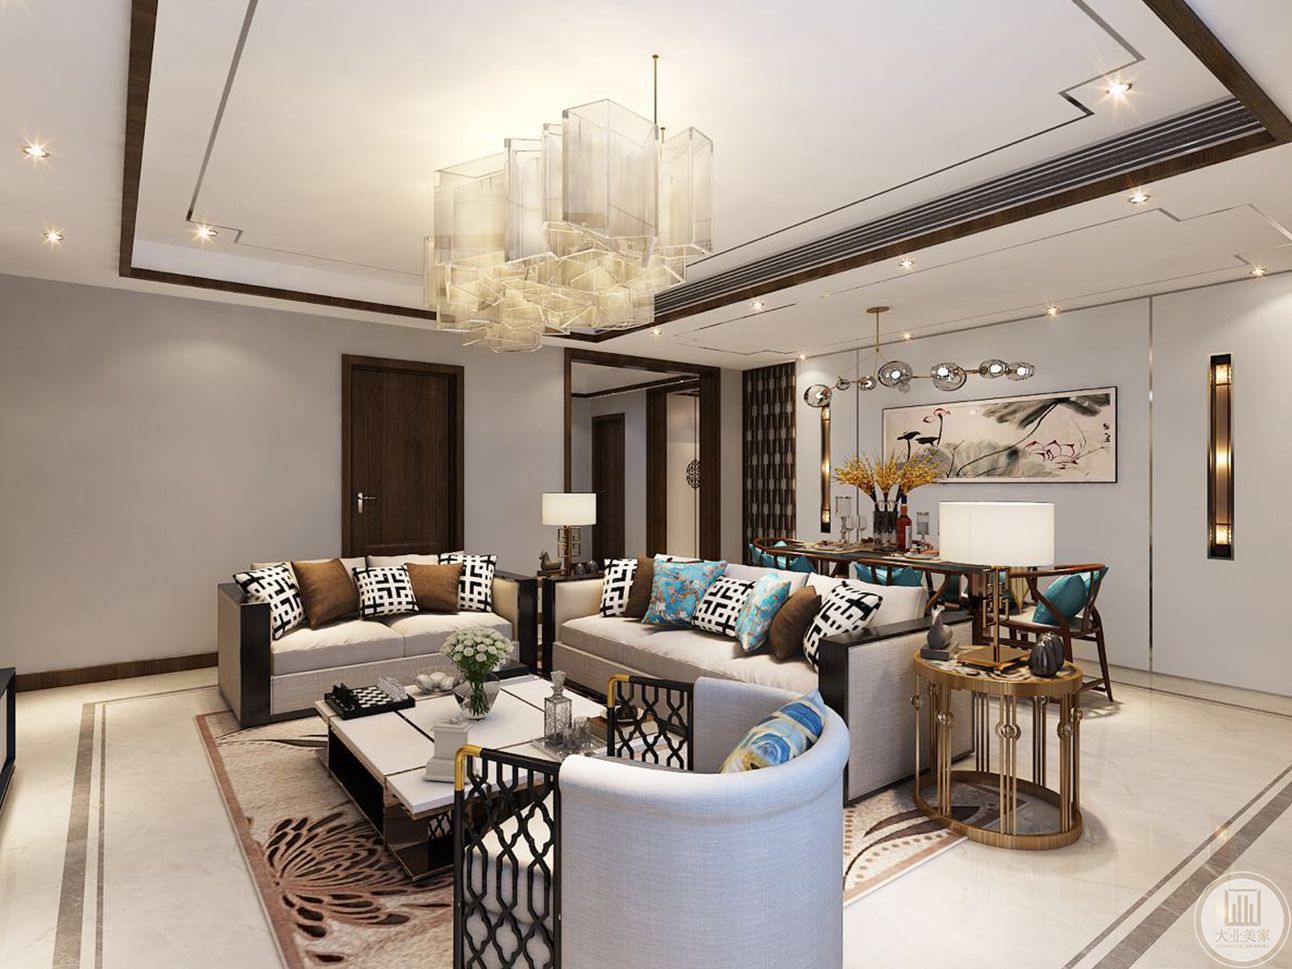 客厅空间较大，而业主注重生活的舒适度，空间的最大化，所以简约的风格更能彰显主人的生活品味。 